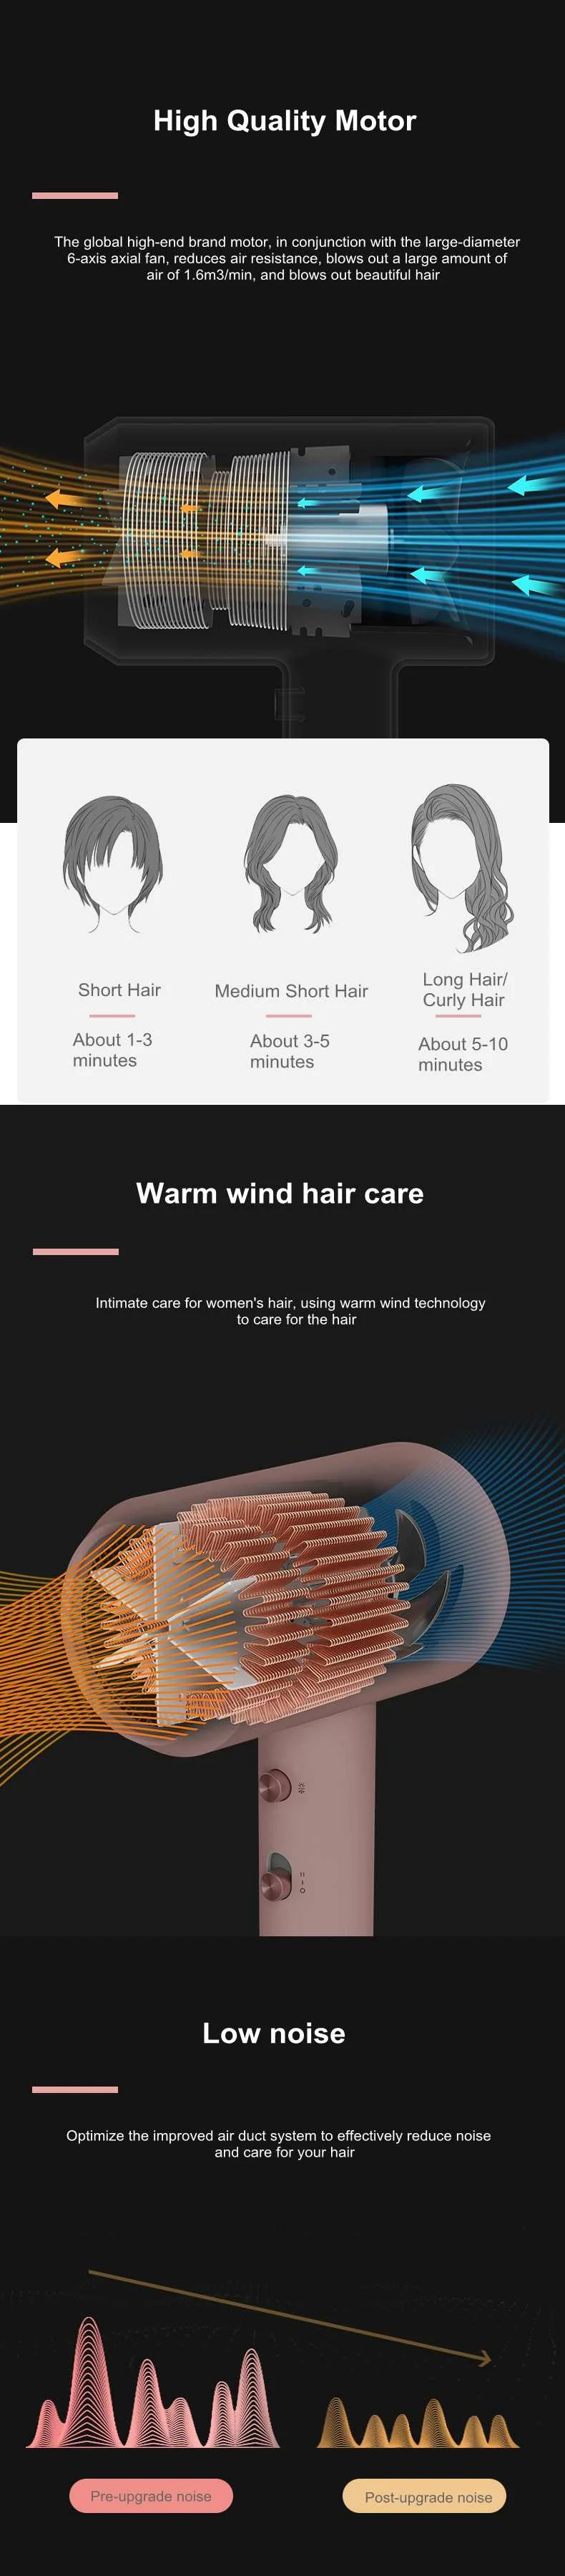 YOUPIN zhiбаи HL321 мини-Анион Фен для волос Портативный Быстросохнущий инструмент для волос 2 скорости контроль температуры фен для путешествий и дома